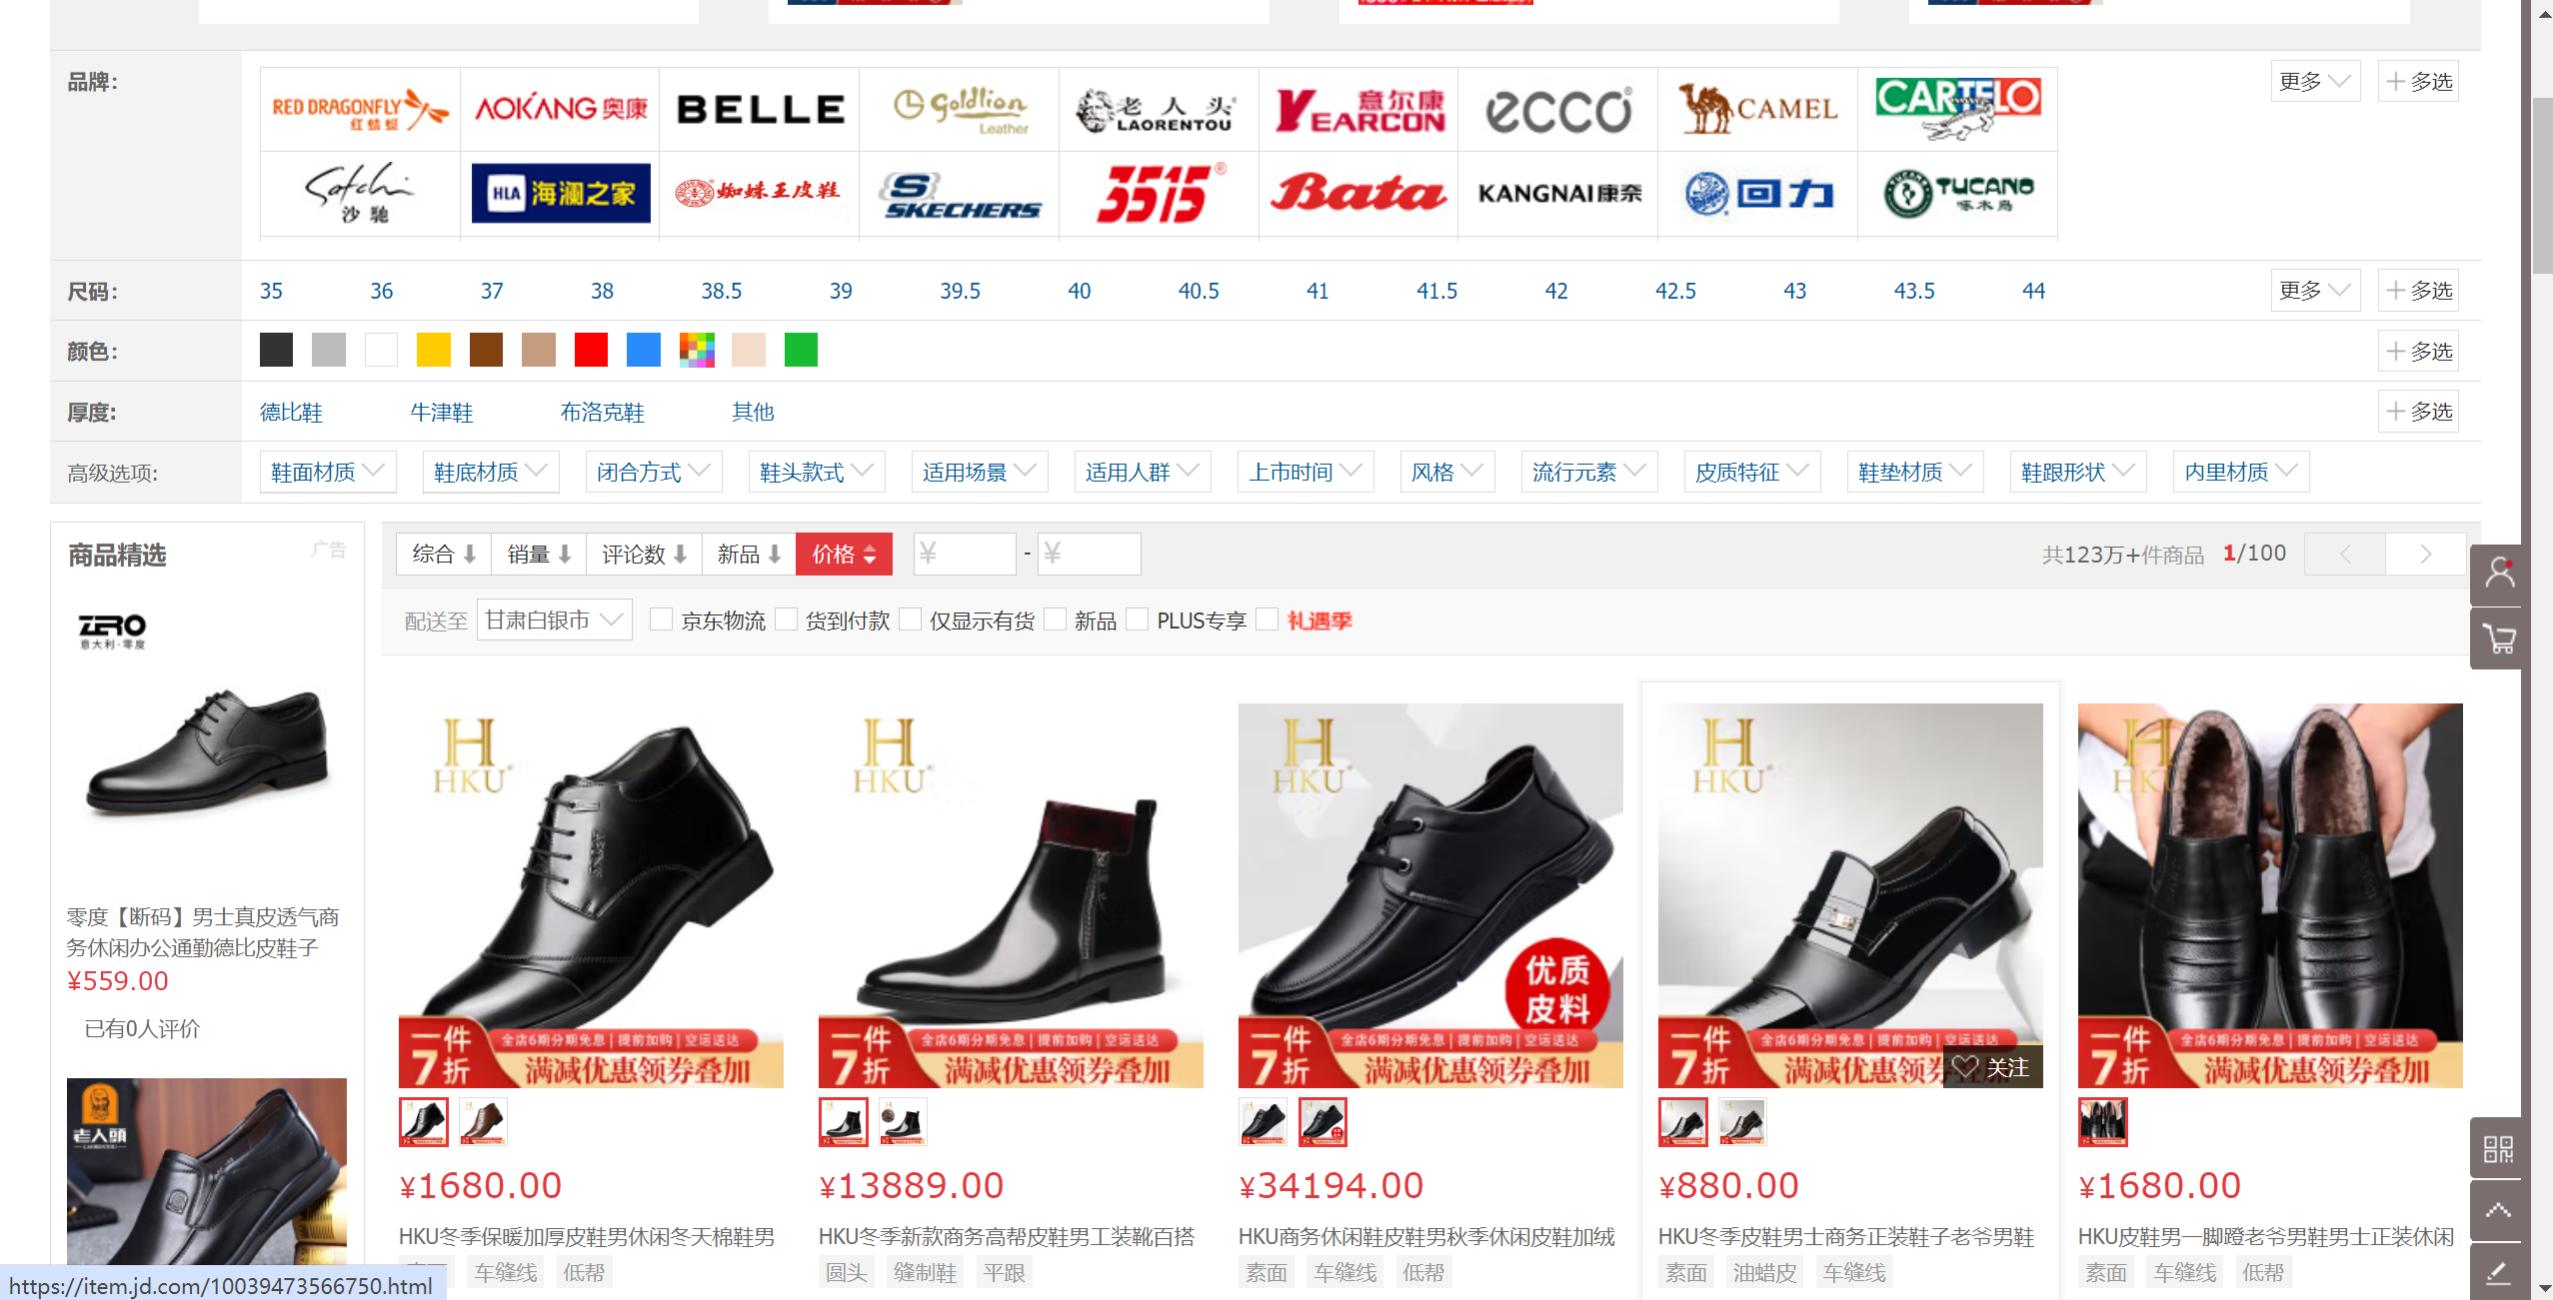 高档鞋履品牌营销策略解析